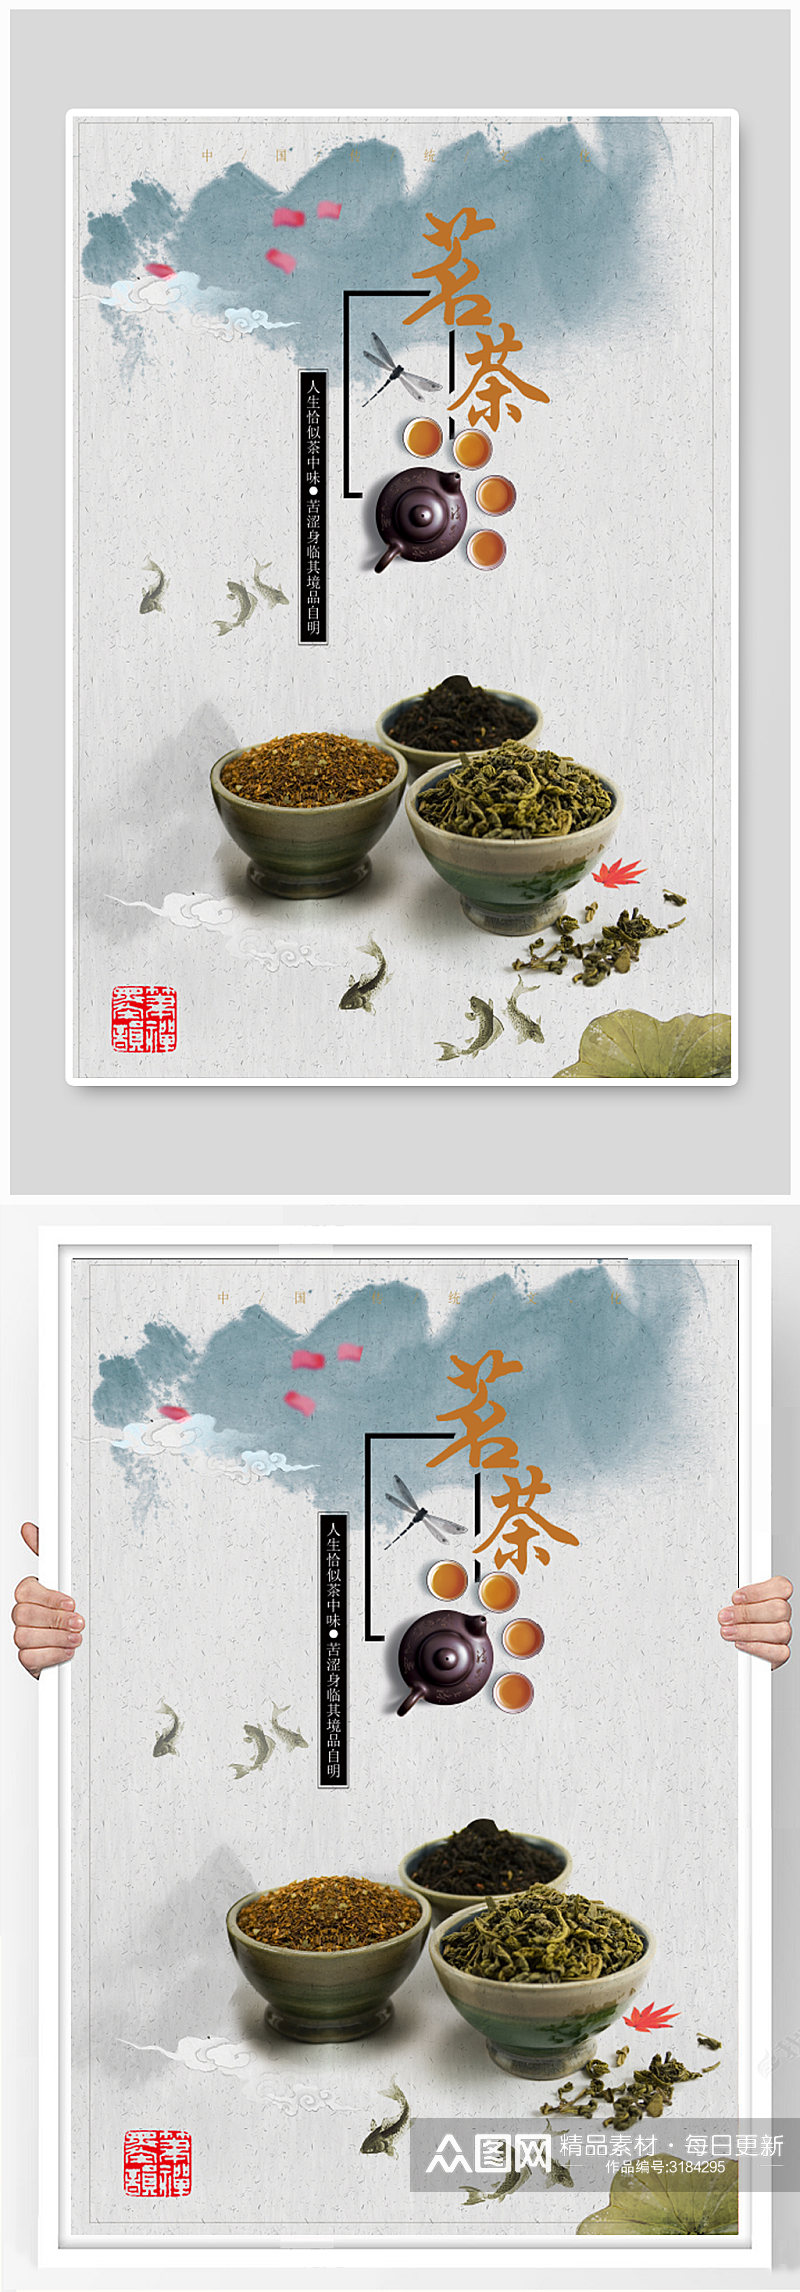 古典茶文化海报下载素材